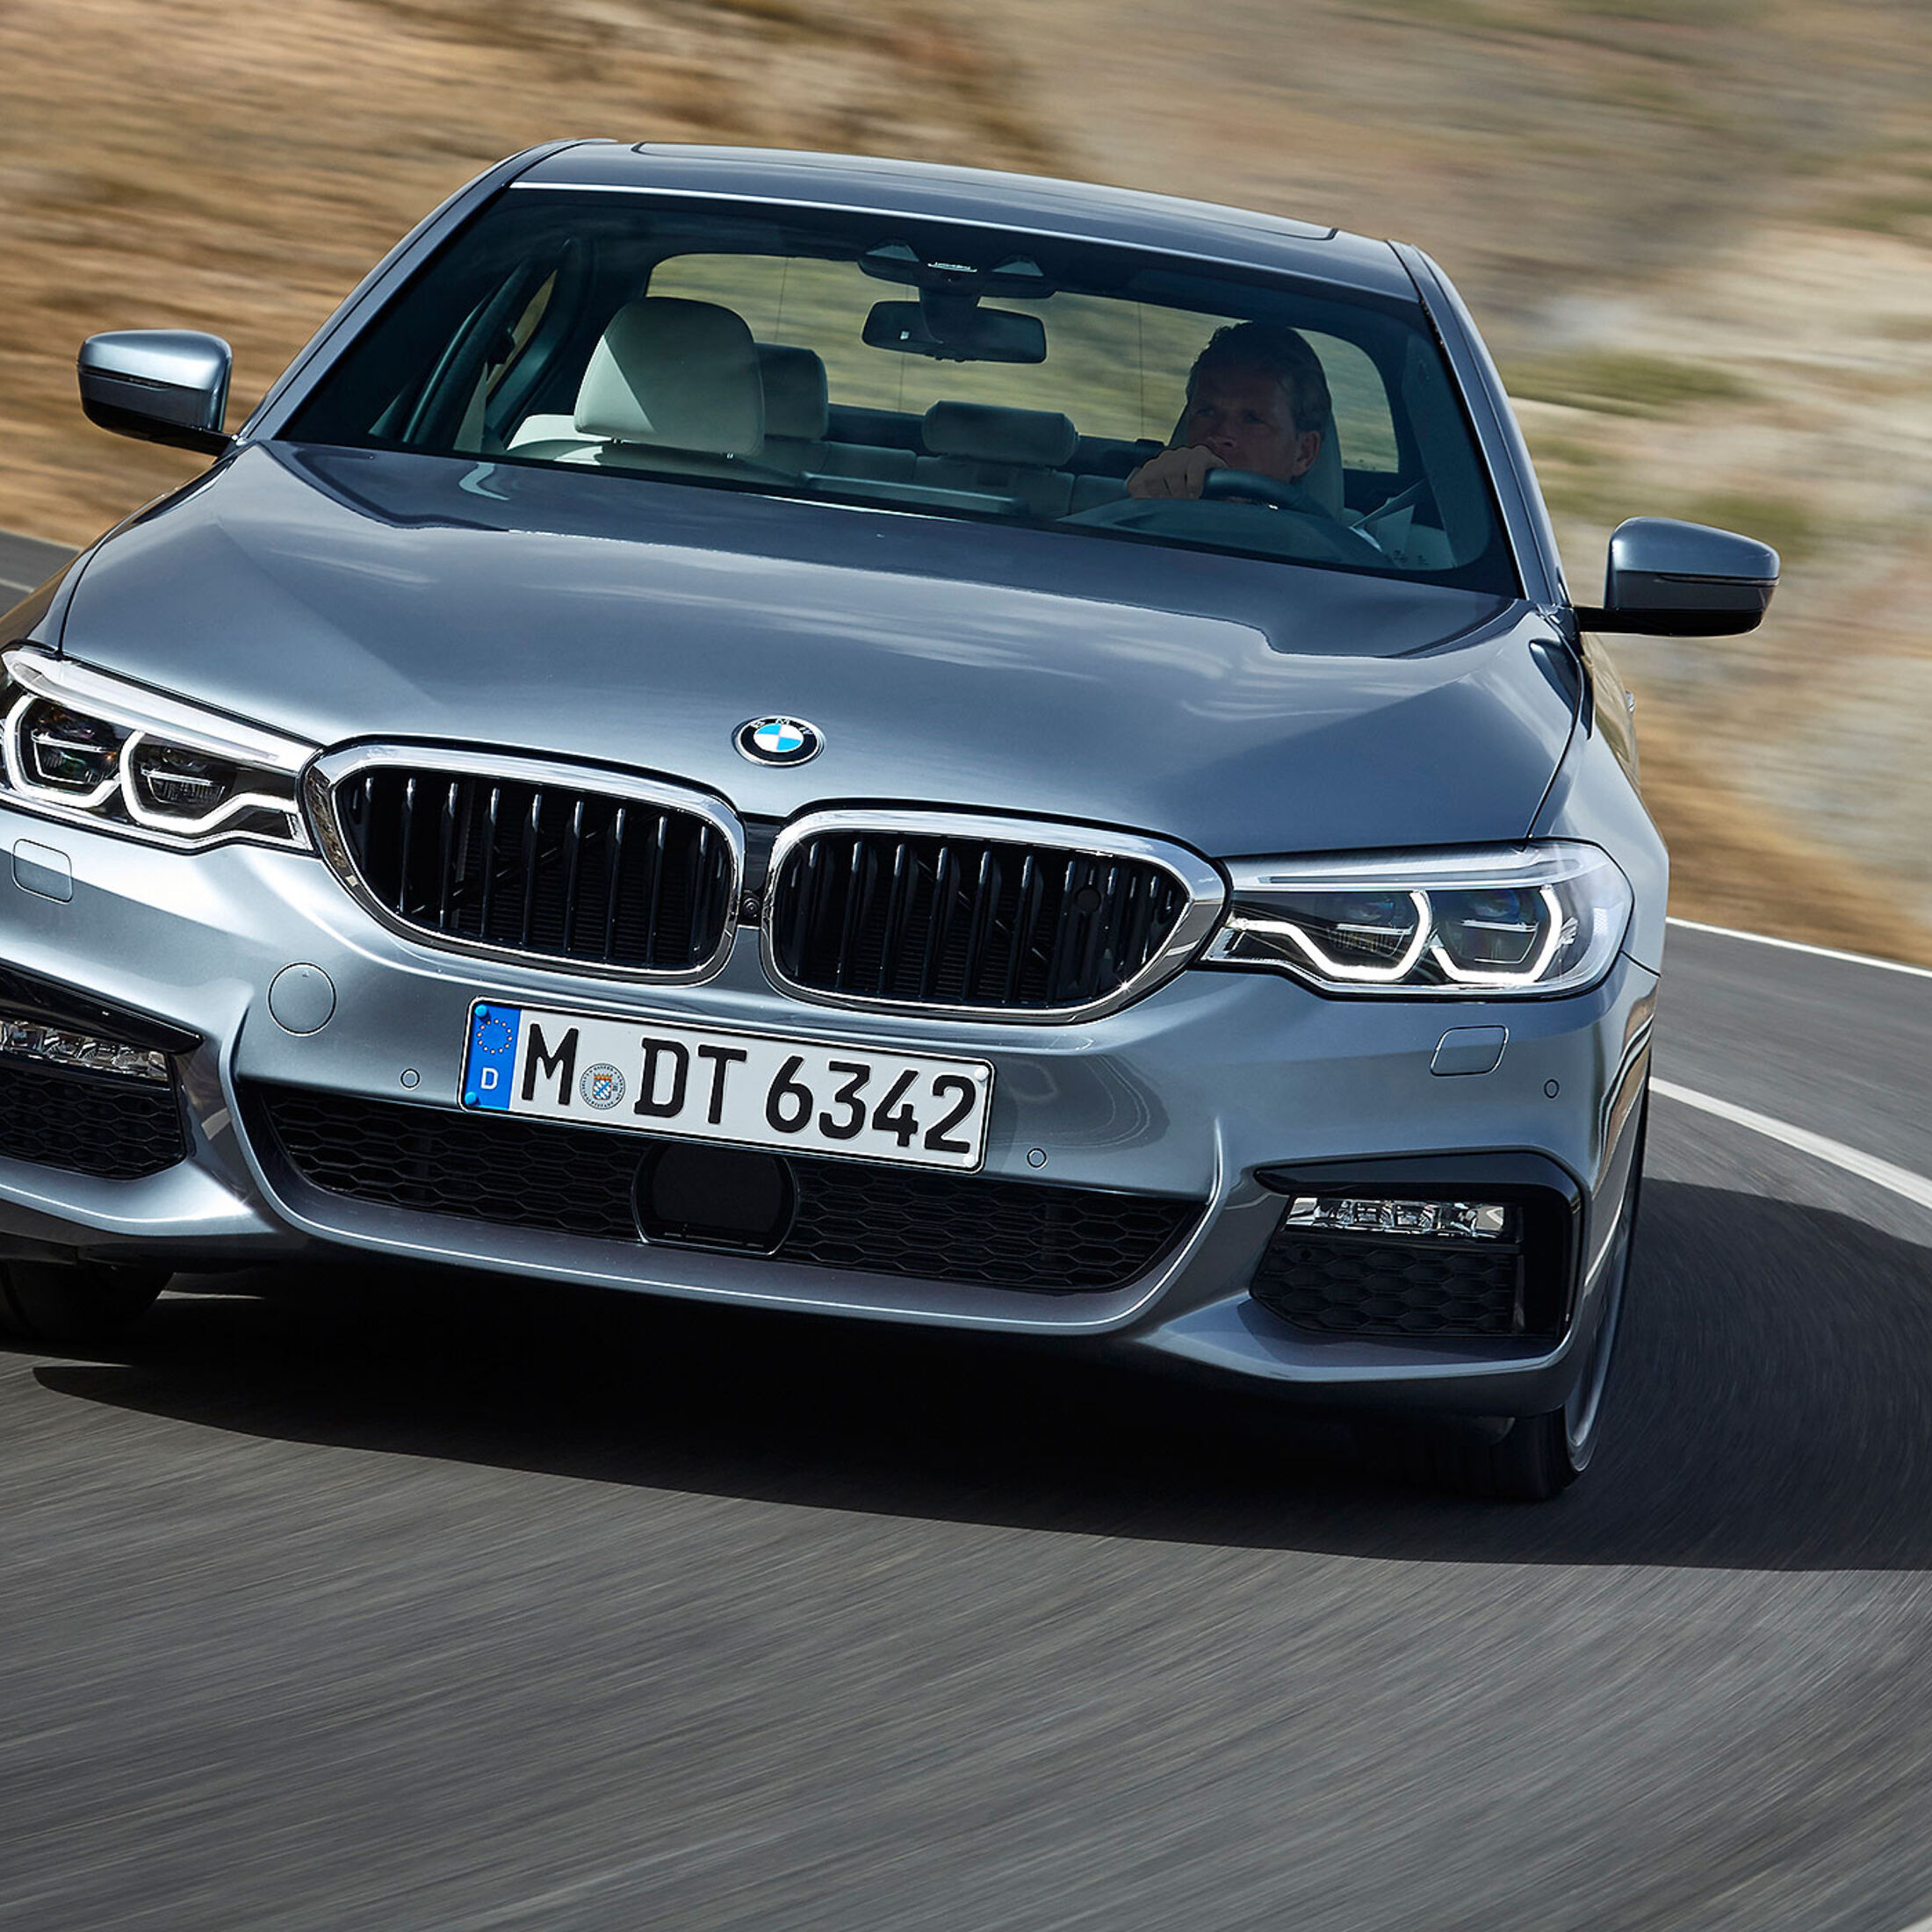 Neuer BMW 5er G30 (2017): Alle Infos, Preise und Bilder